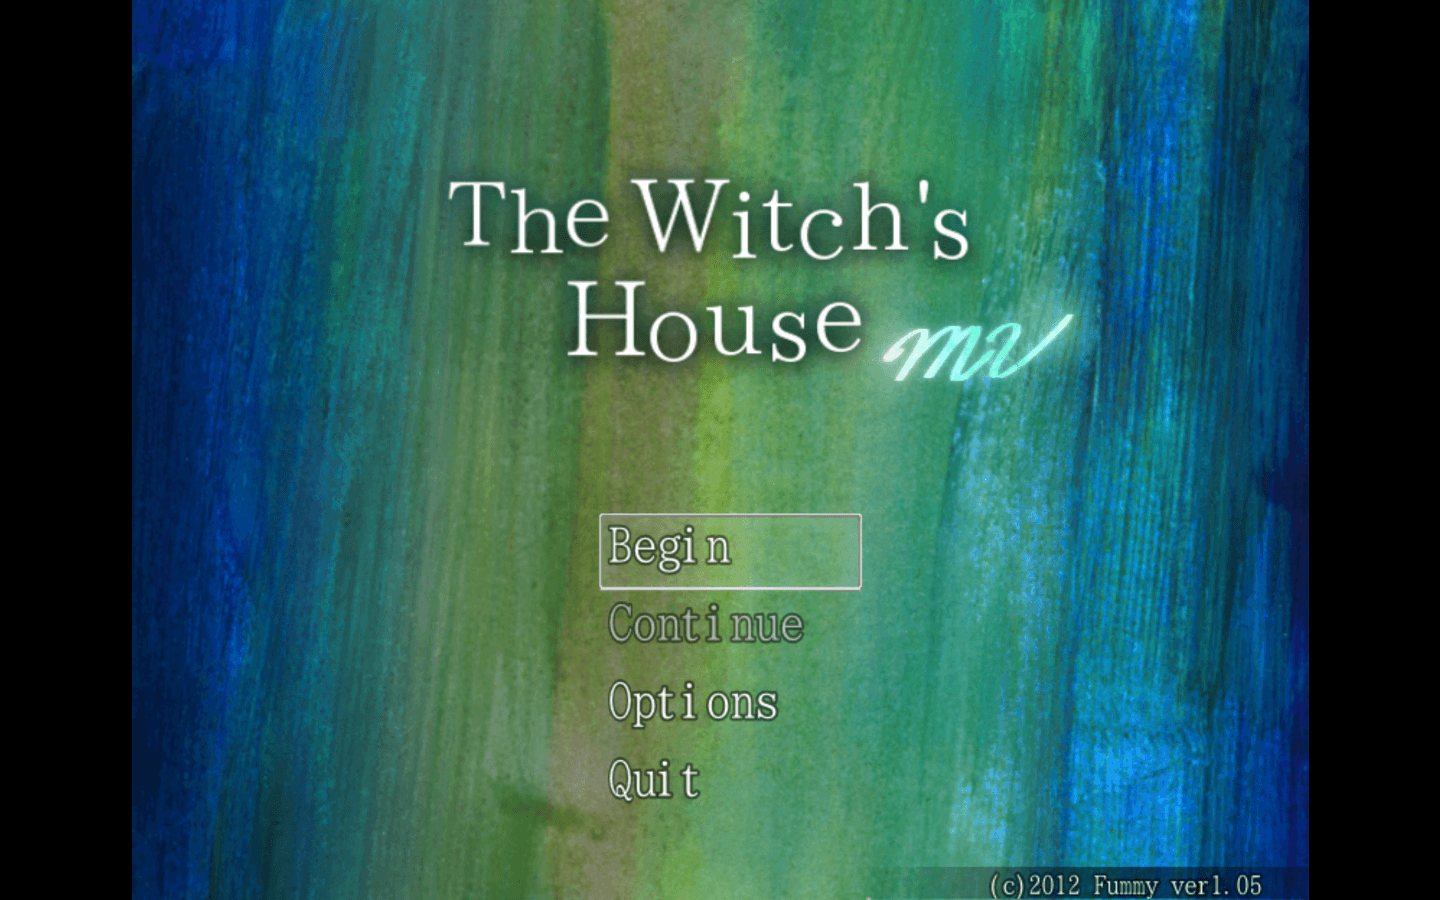 魔女之家MV for Mac v1.06d The Witch’s House MV 中文原生版 苹果电脑